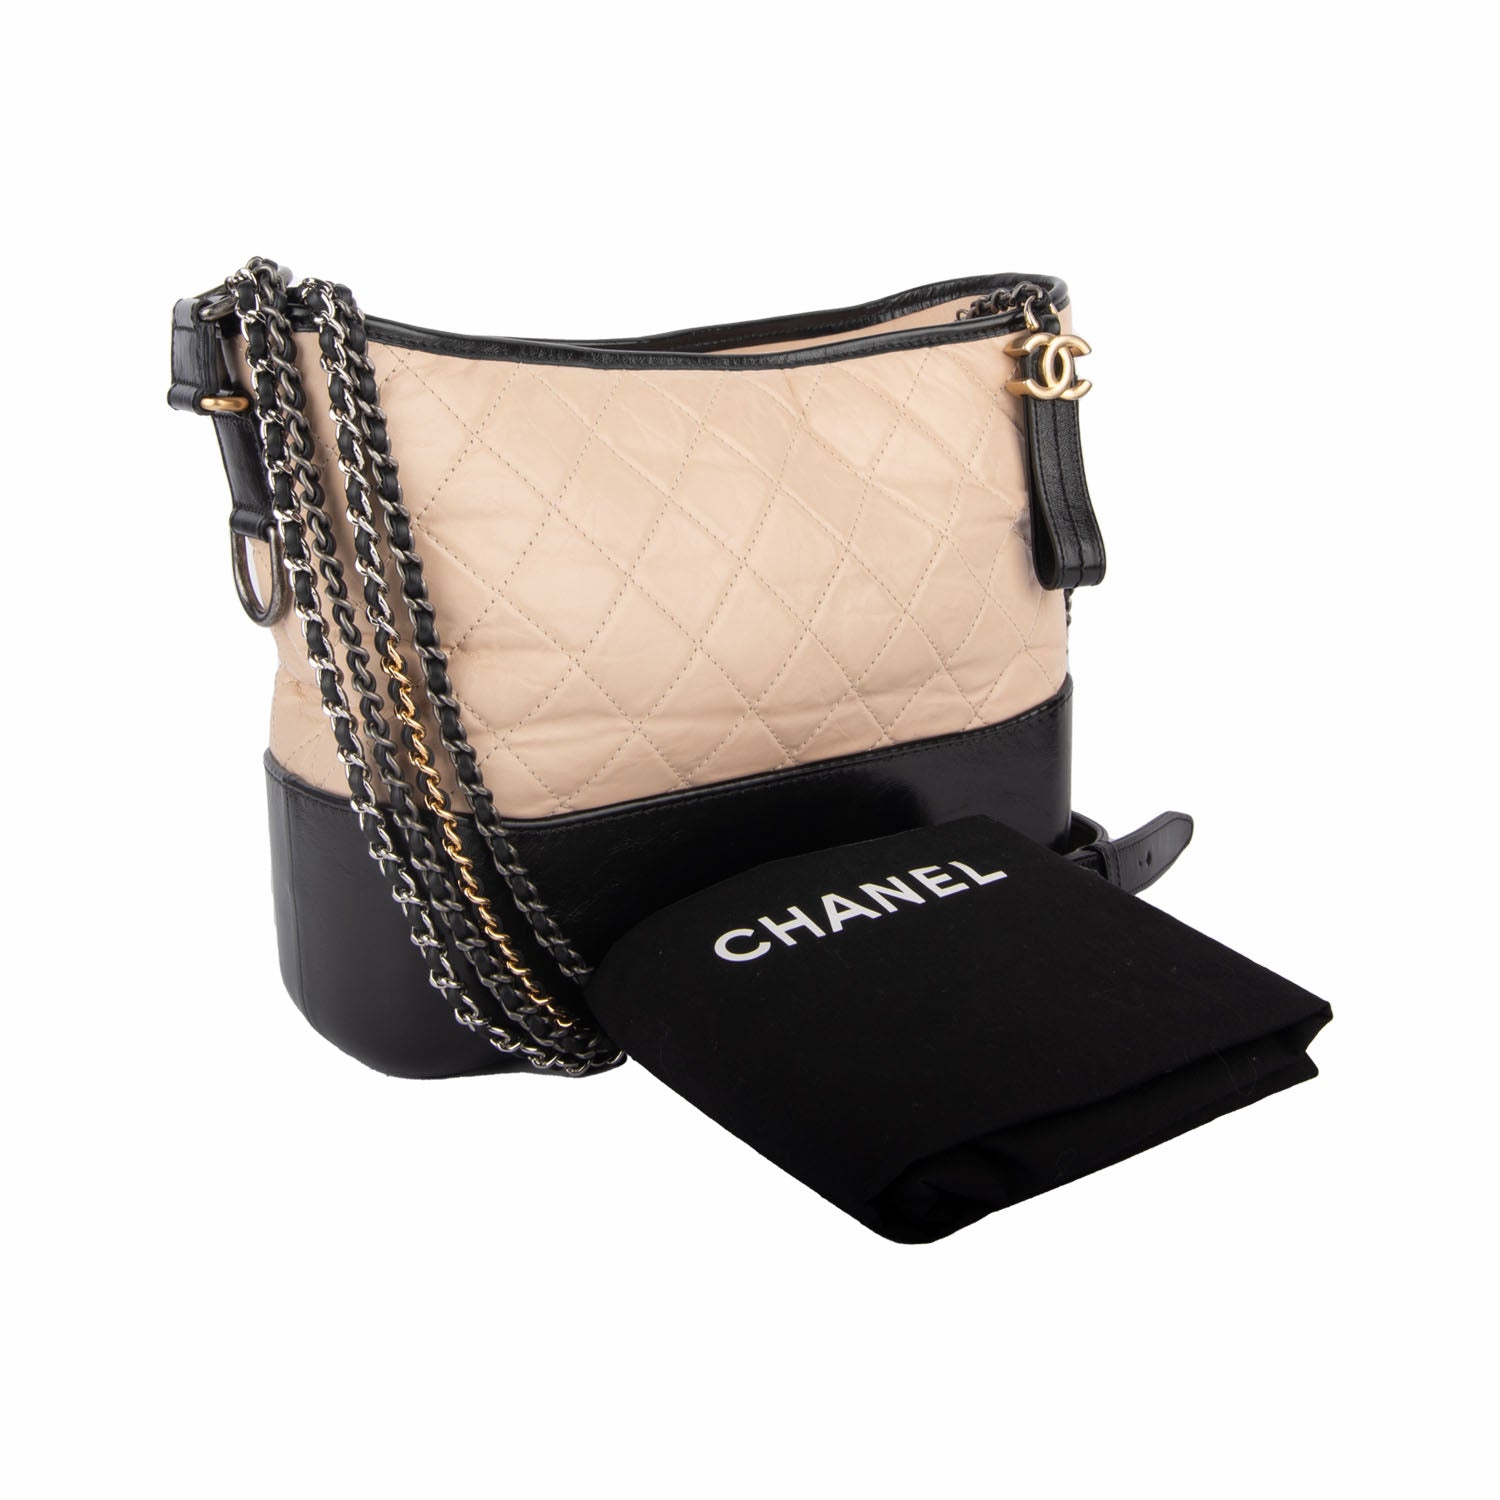 Chanel Calfskin Quilted Medium Gabrielle Hobo Beige Black